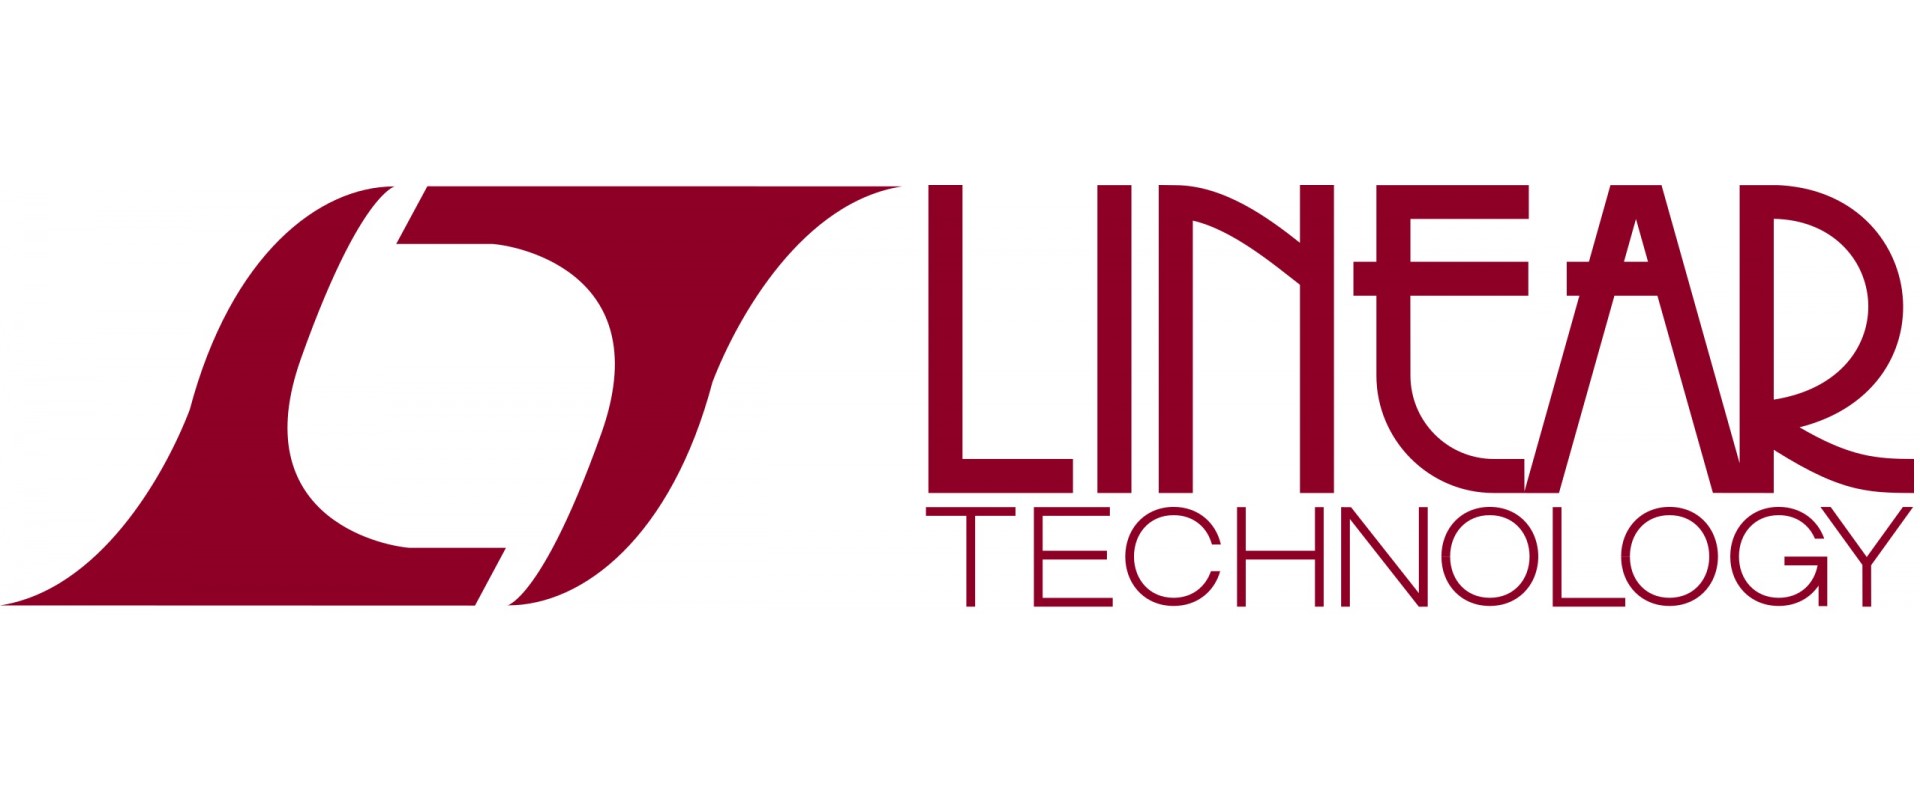 Linear Tech